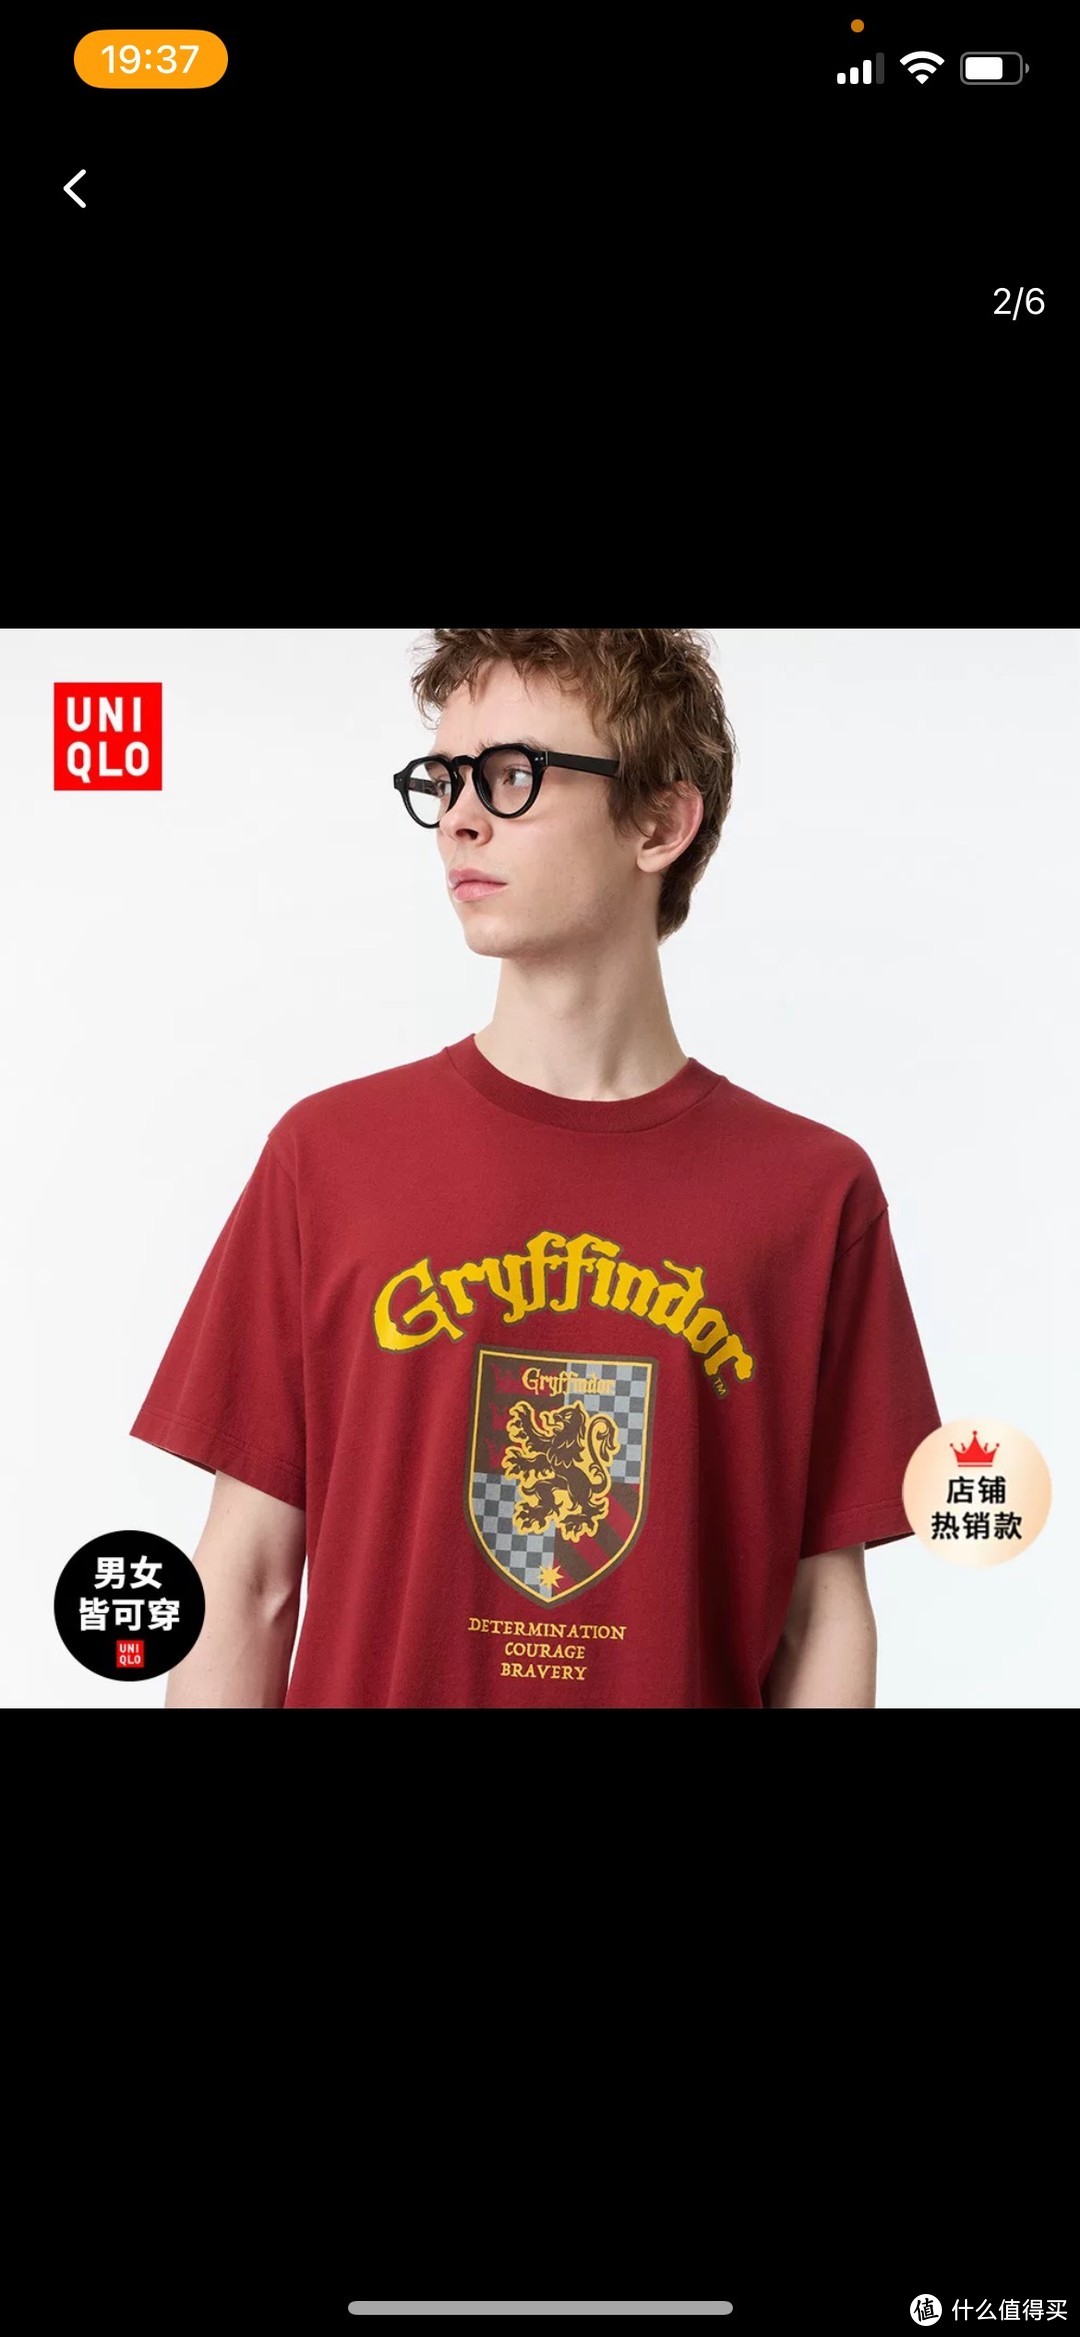 勇敢的红色是格兰芬多永远不变的底色，潮流T恤harry 与优衣库联名作品分享。